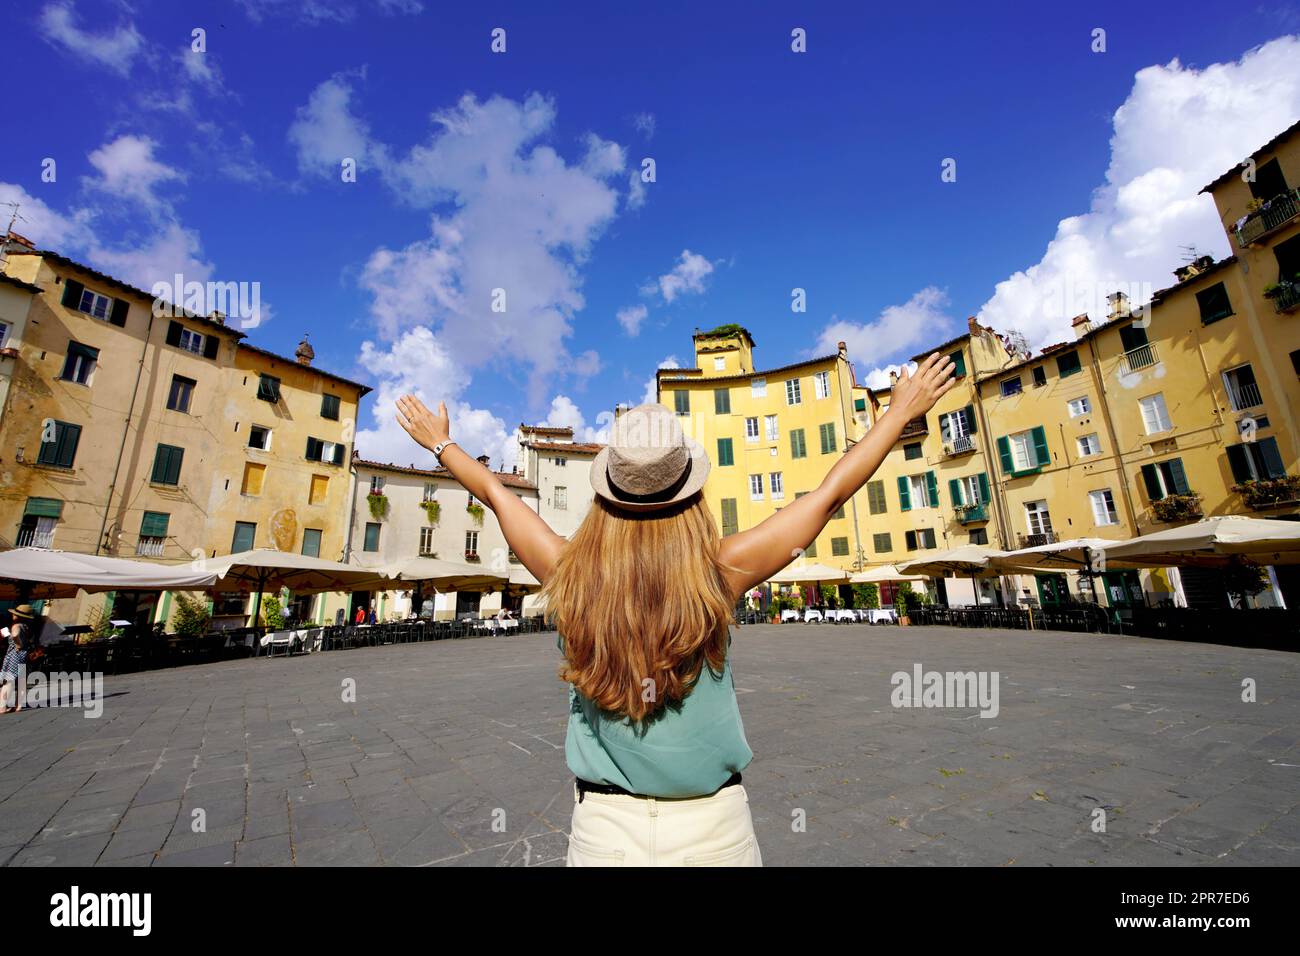 Vacanze in Toscana. Giovane donna turistica che alza le armi nella storica piazza rotonda Piazza Anfiteatro a Lucca, Toscana, Italia. Foto Stock